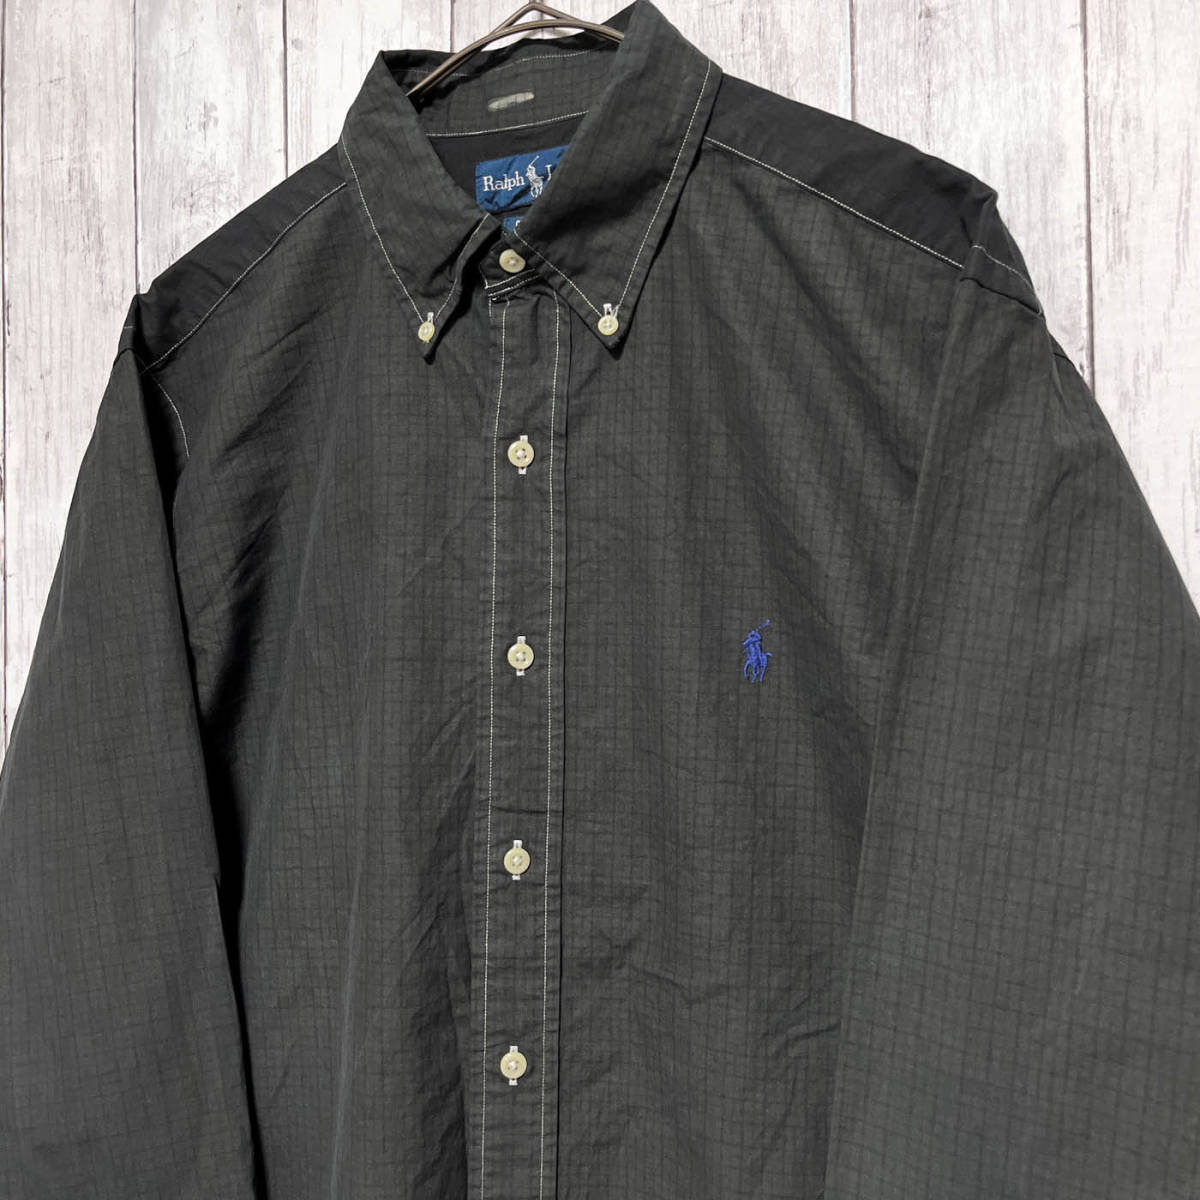 ラルフローレン Ralph Lauren CLASSIC FIT チェックシャツ 長袖シャツ メンズ ワンポイント コットン100% サイズ16 Lサイズ 3‐997_画像3